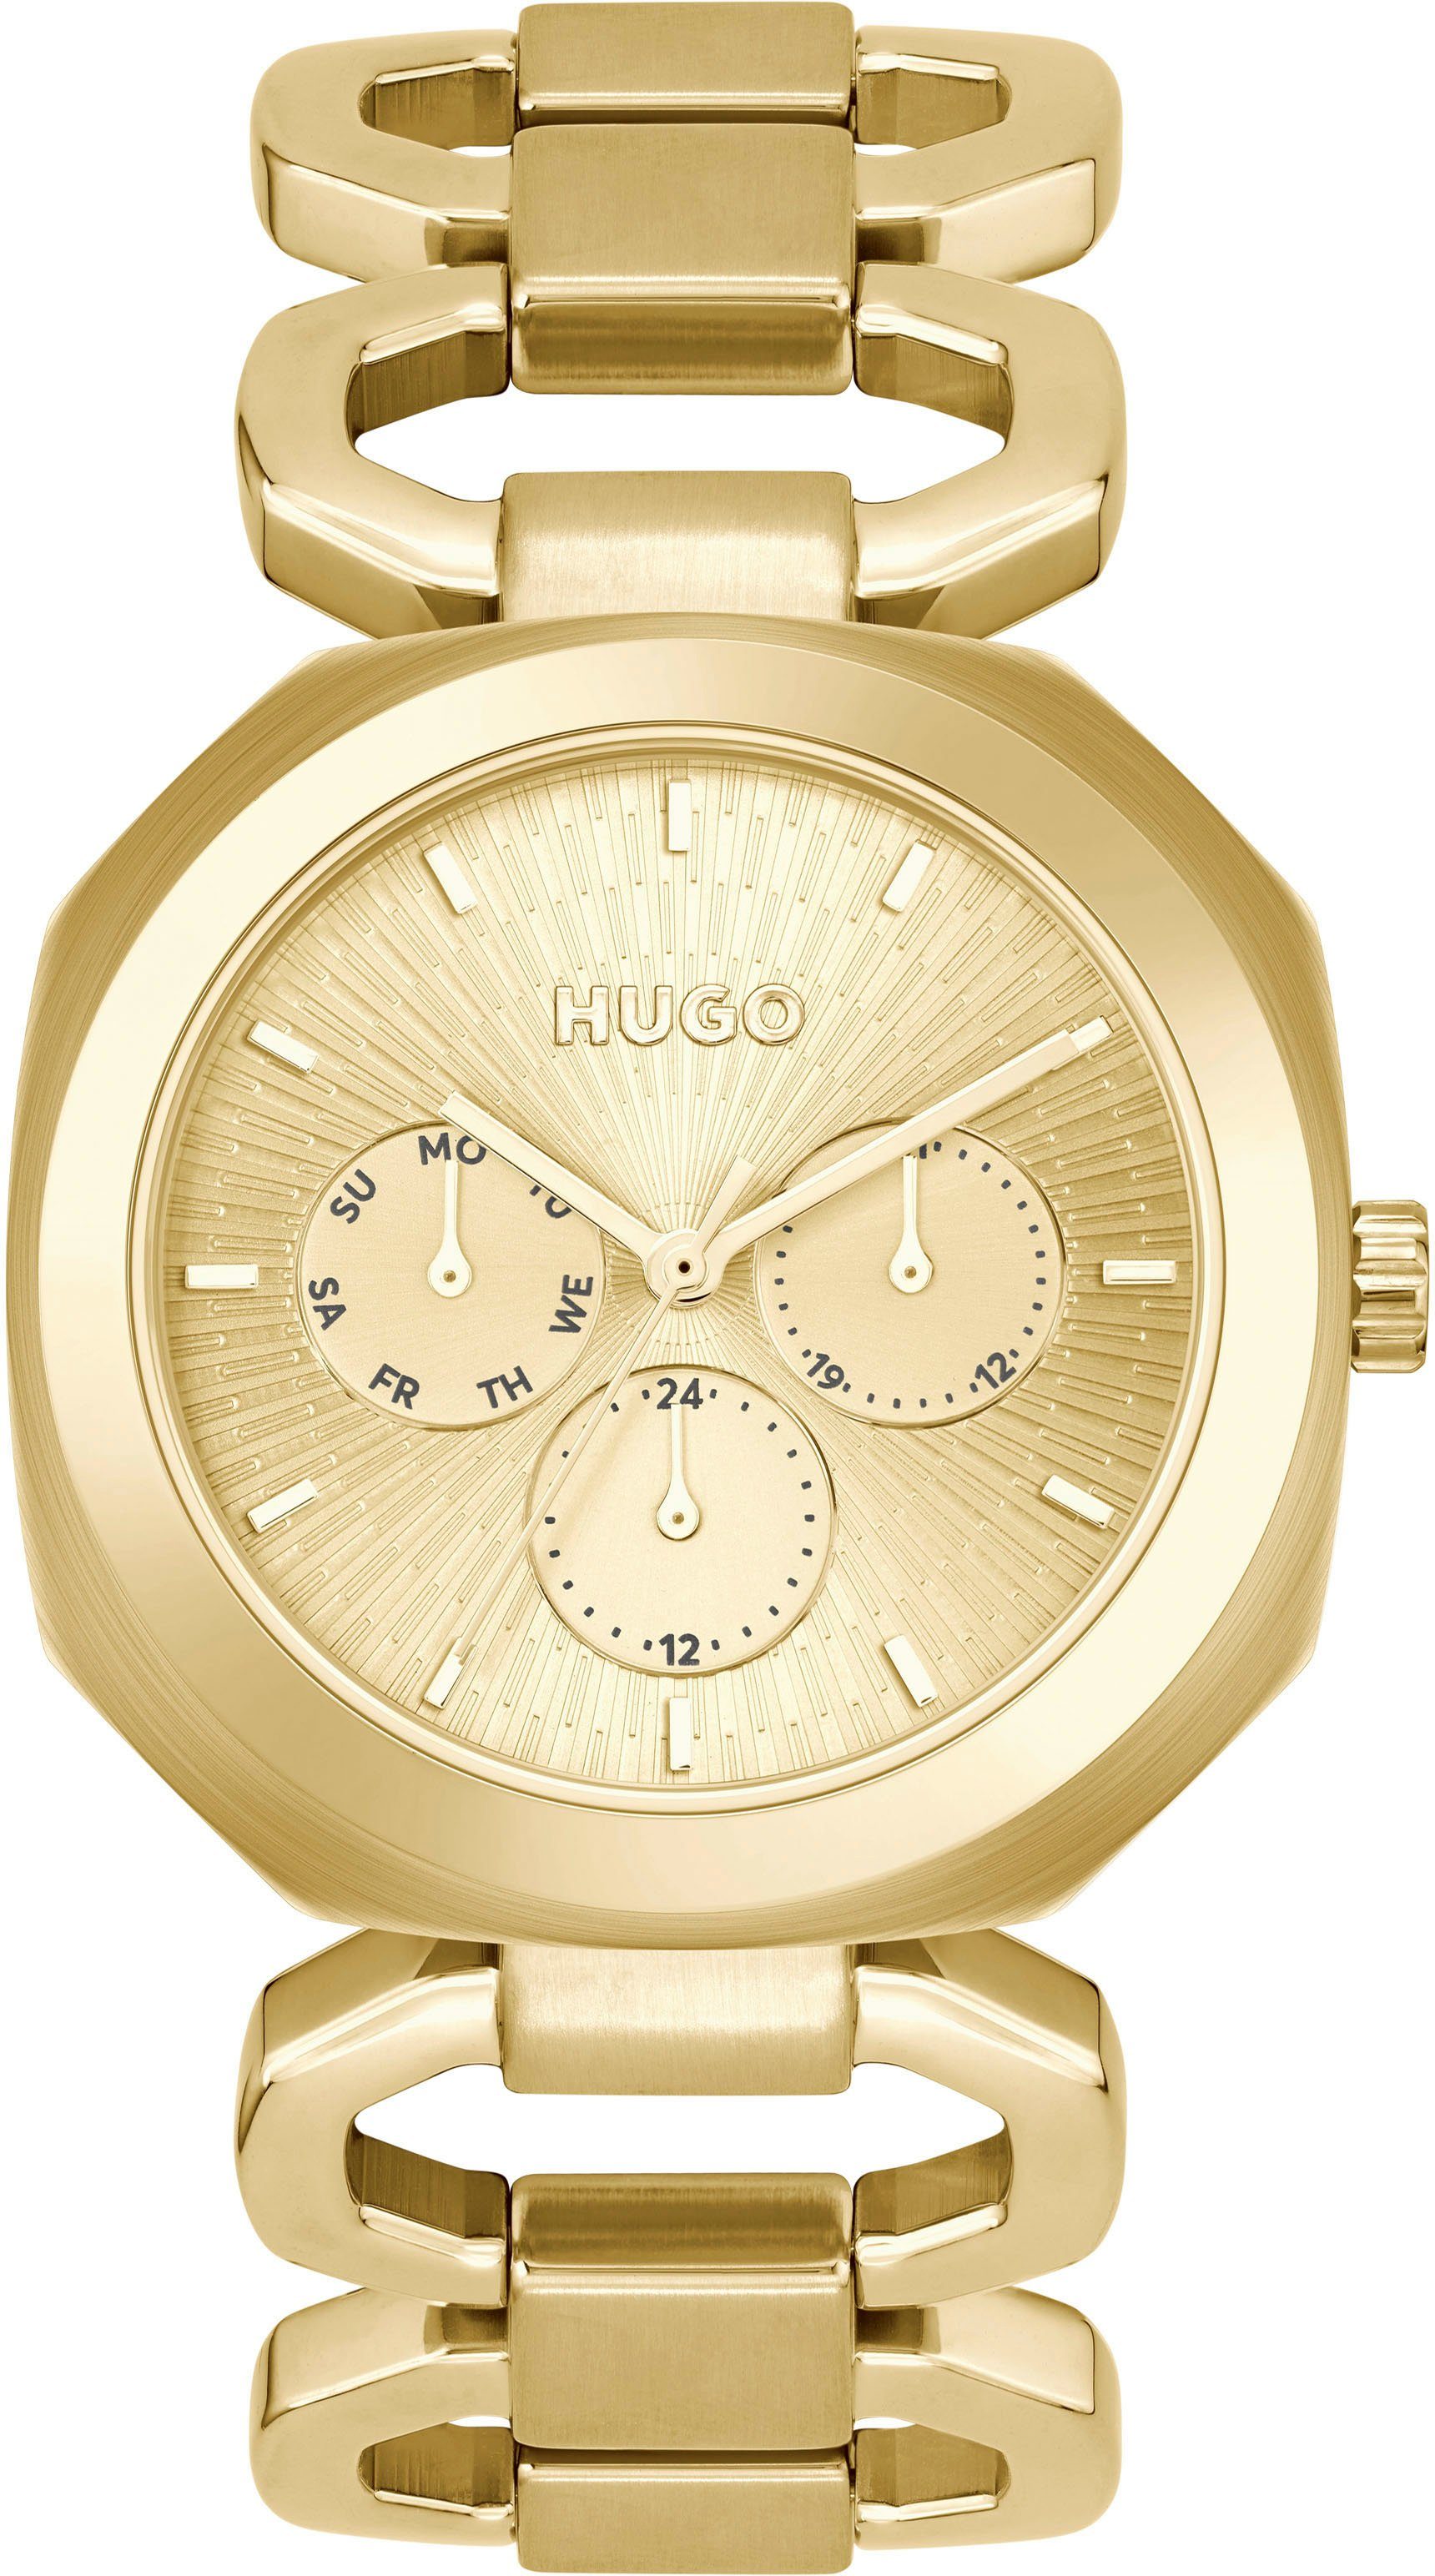 HUGO Multifunktionsuhr #INTENSE, 1540150, Quarzuhr, Armbanduhr, Damenuhr, Datum, 12/24-Stunden-Anzeige